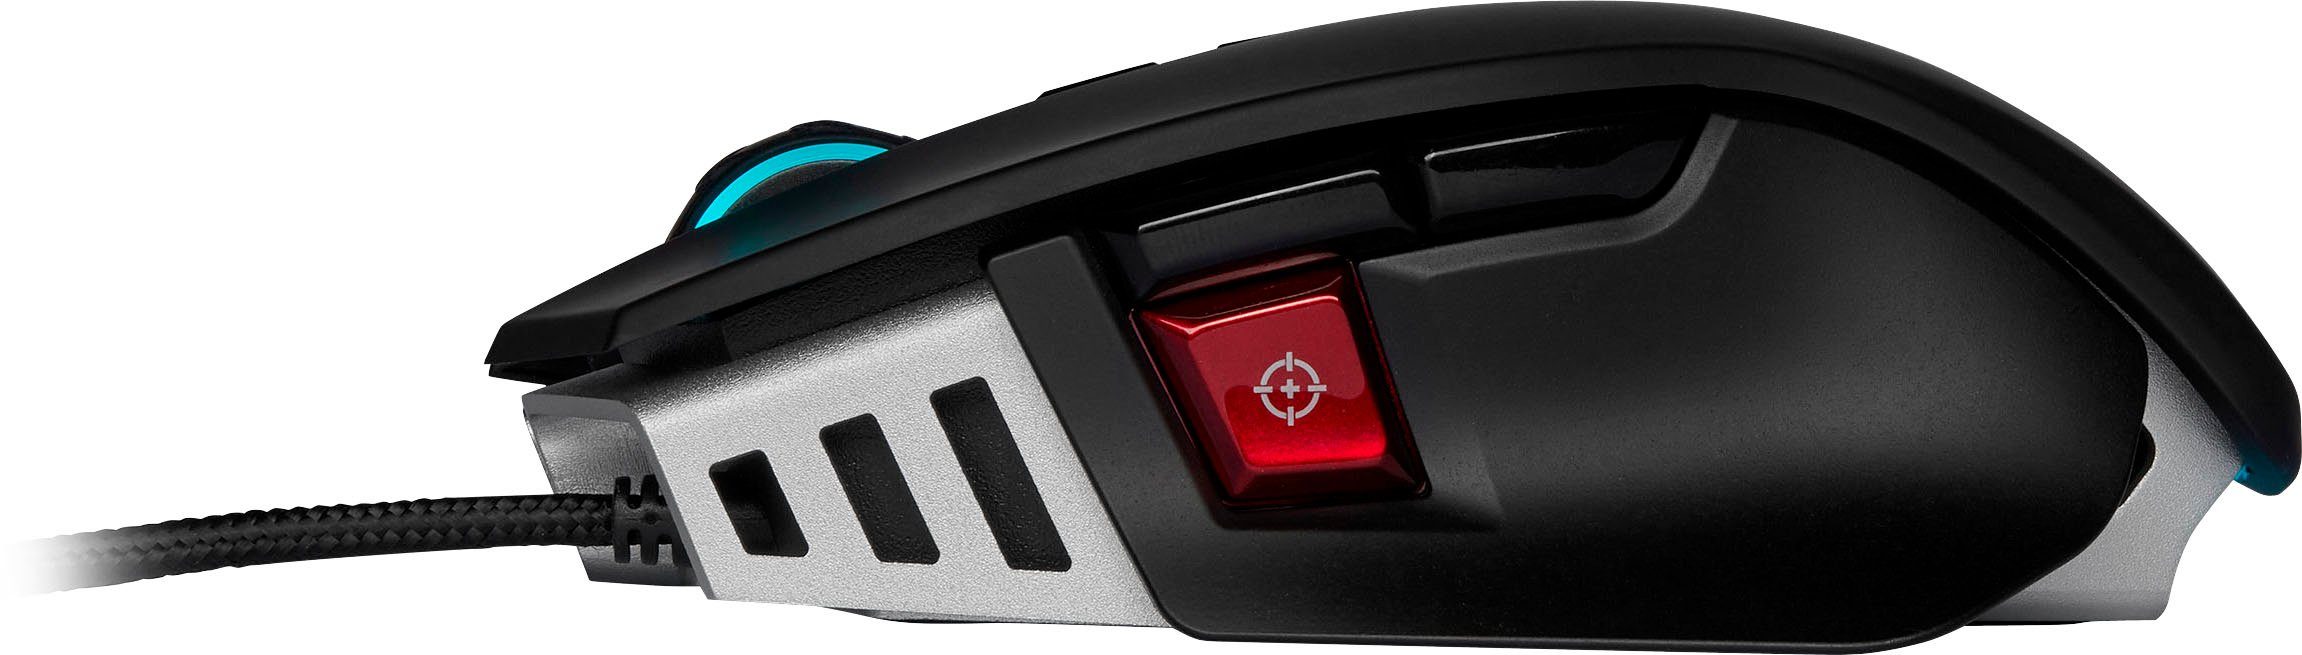 ELITE (kabelgebunden) RGB Gaming Gaming-Maus M65 Mouse Corsair